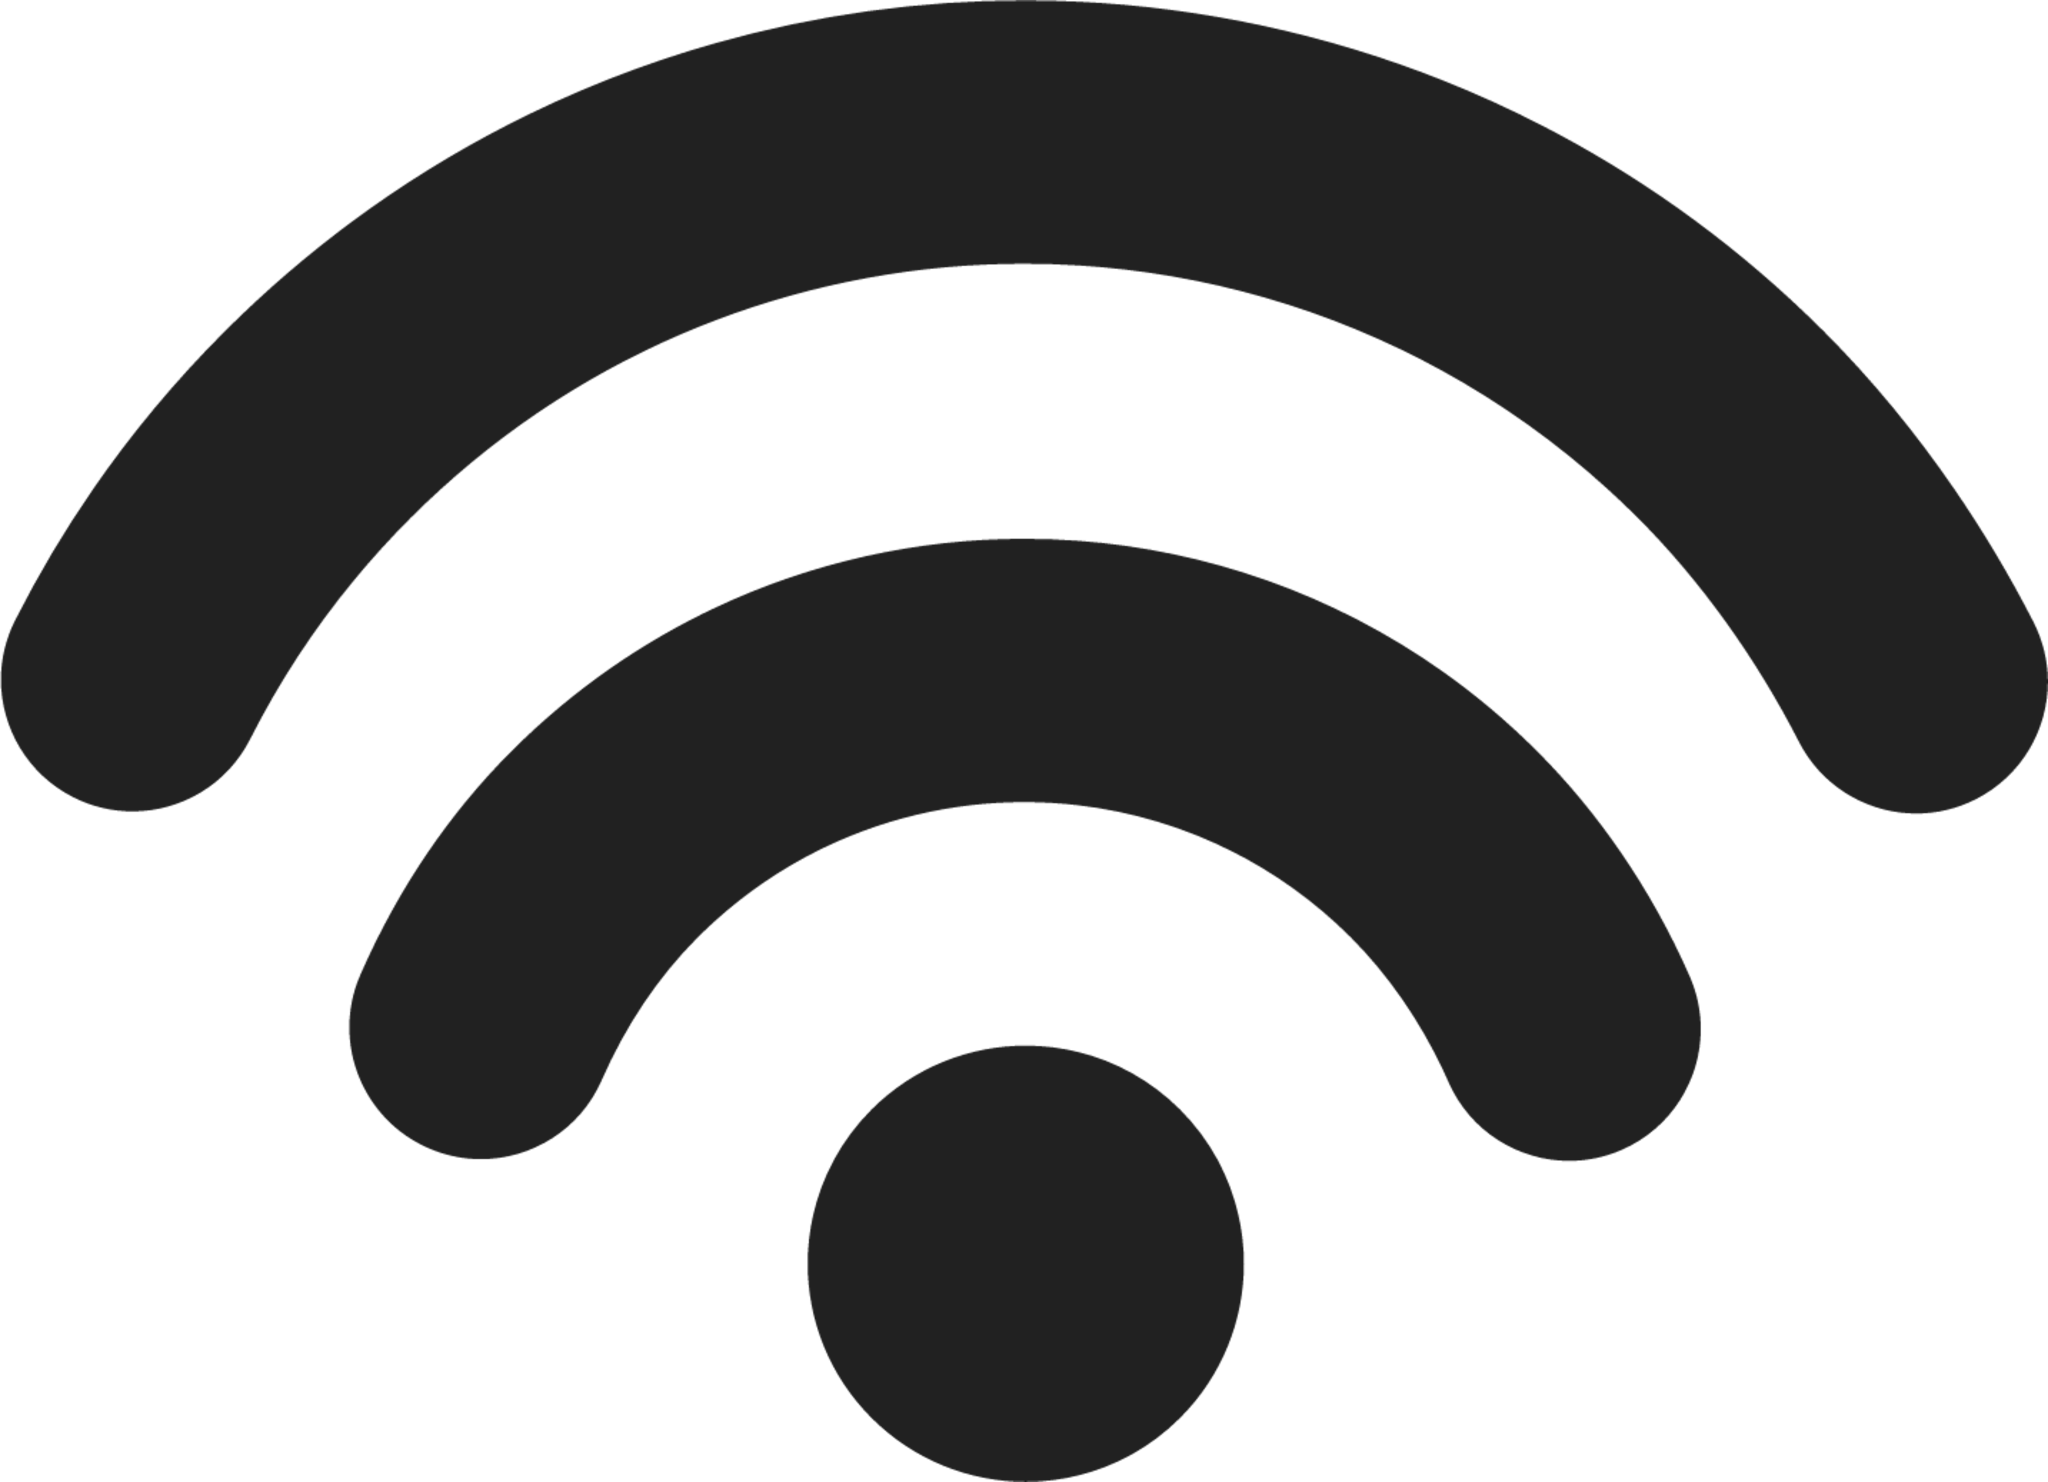 WiFi 2 icon